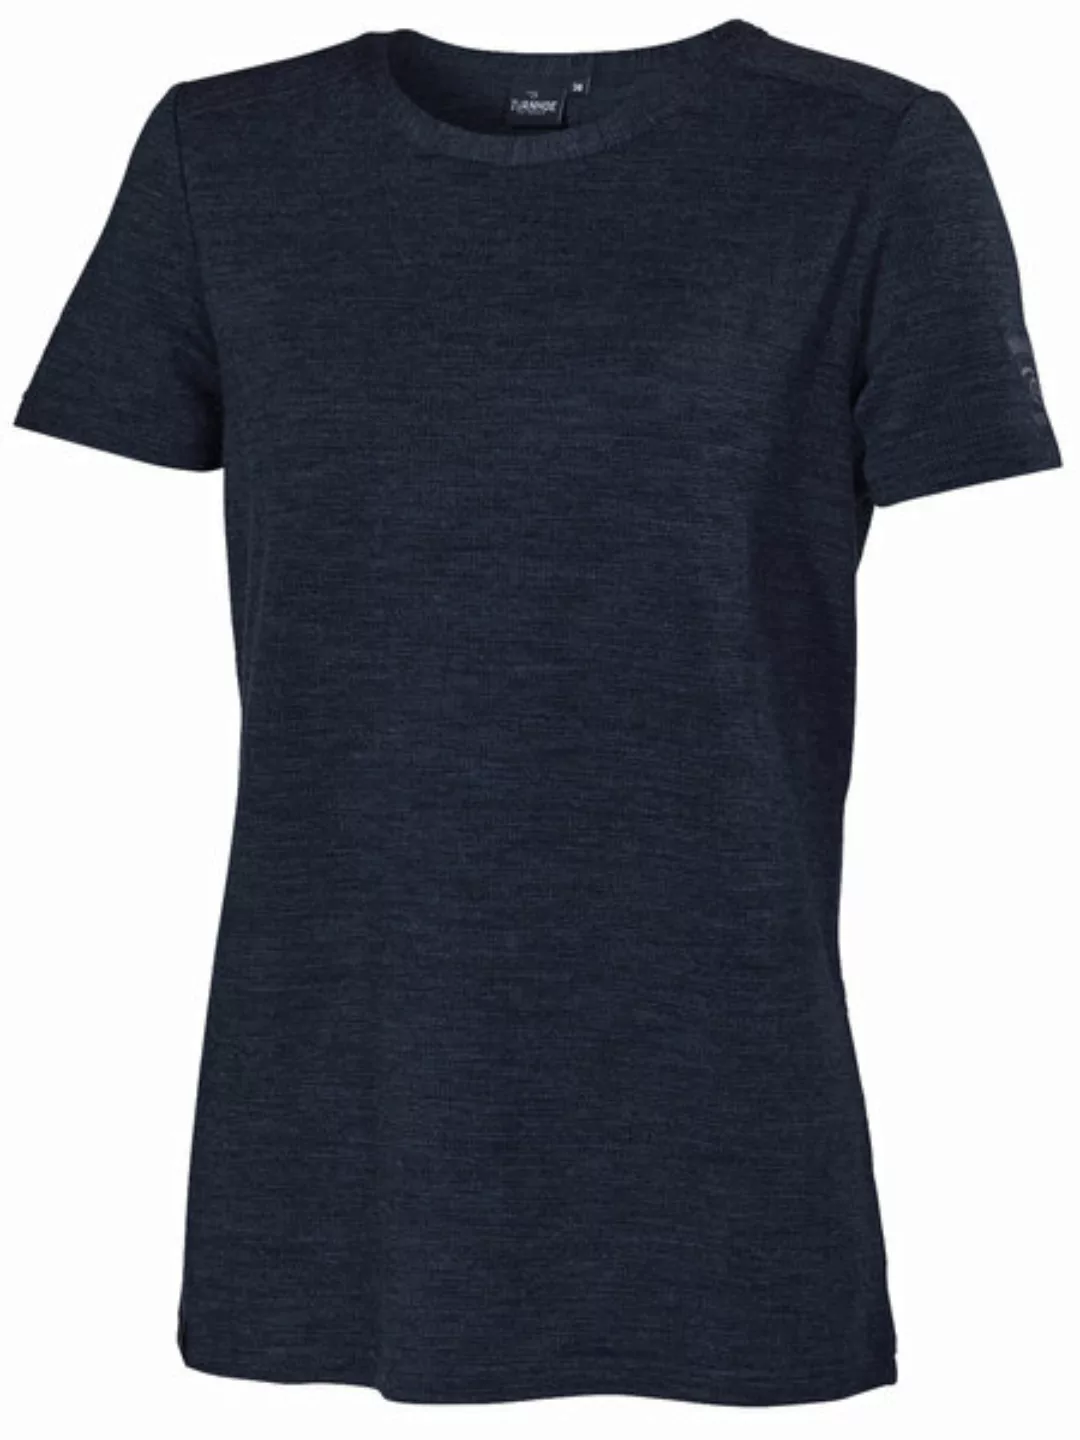 Damen T-shirt Siri Merinowolle/tencel günstig online kaufen